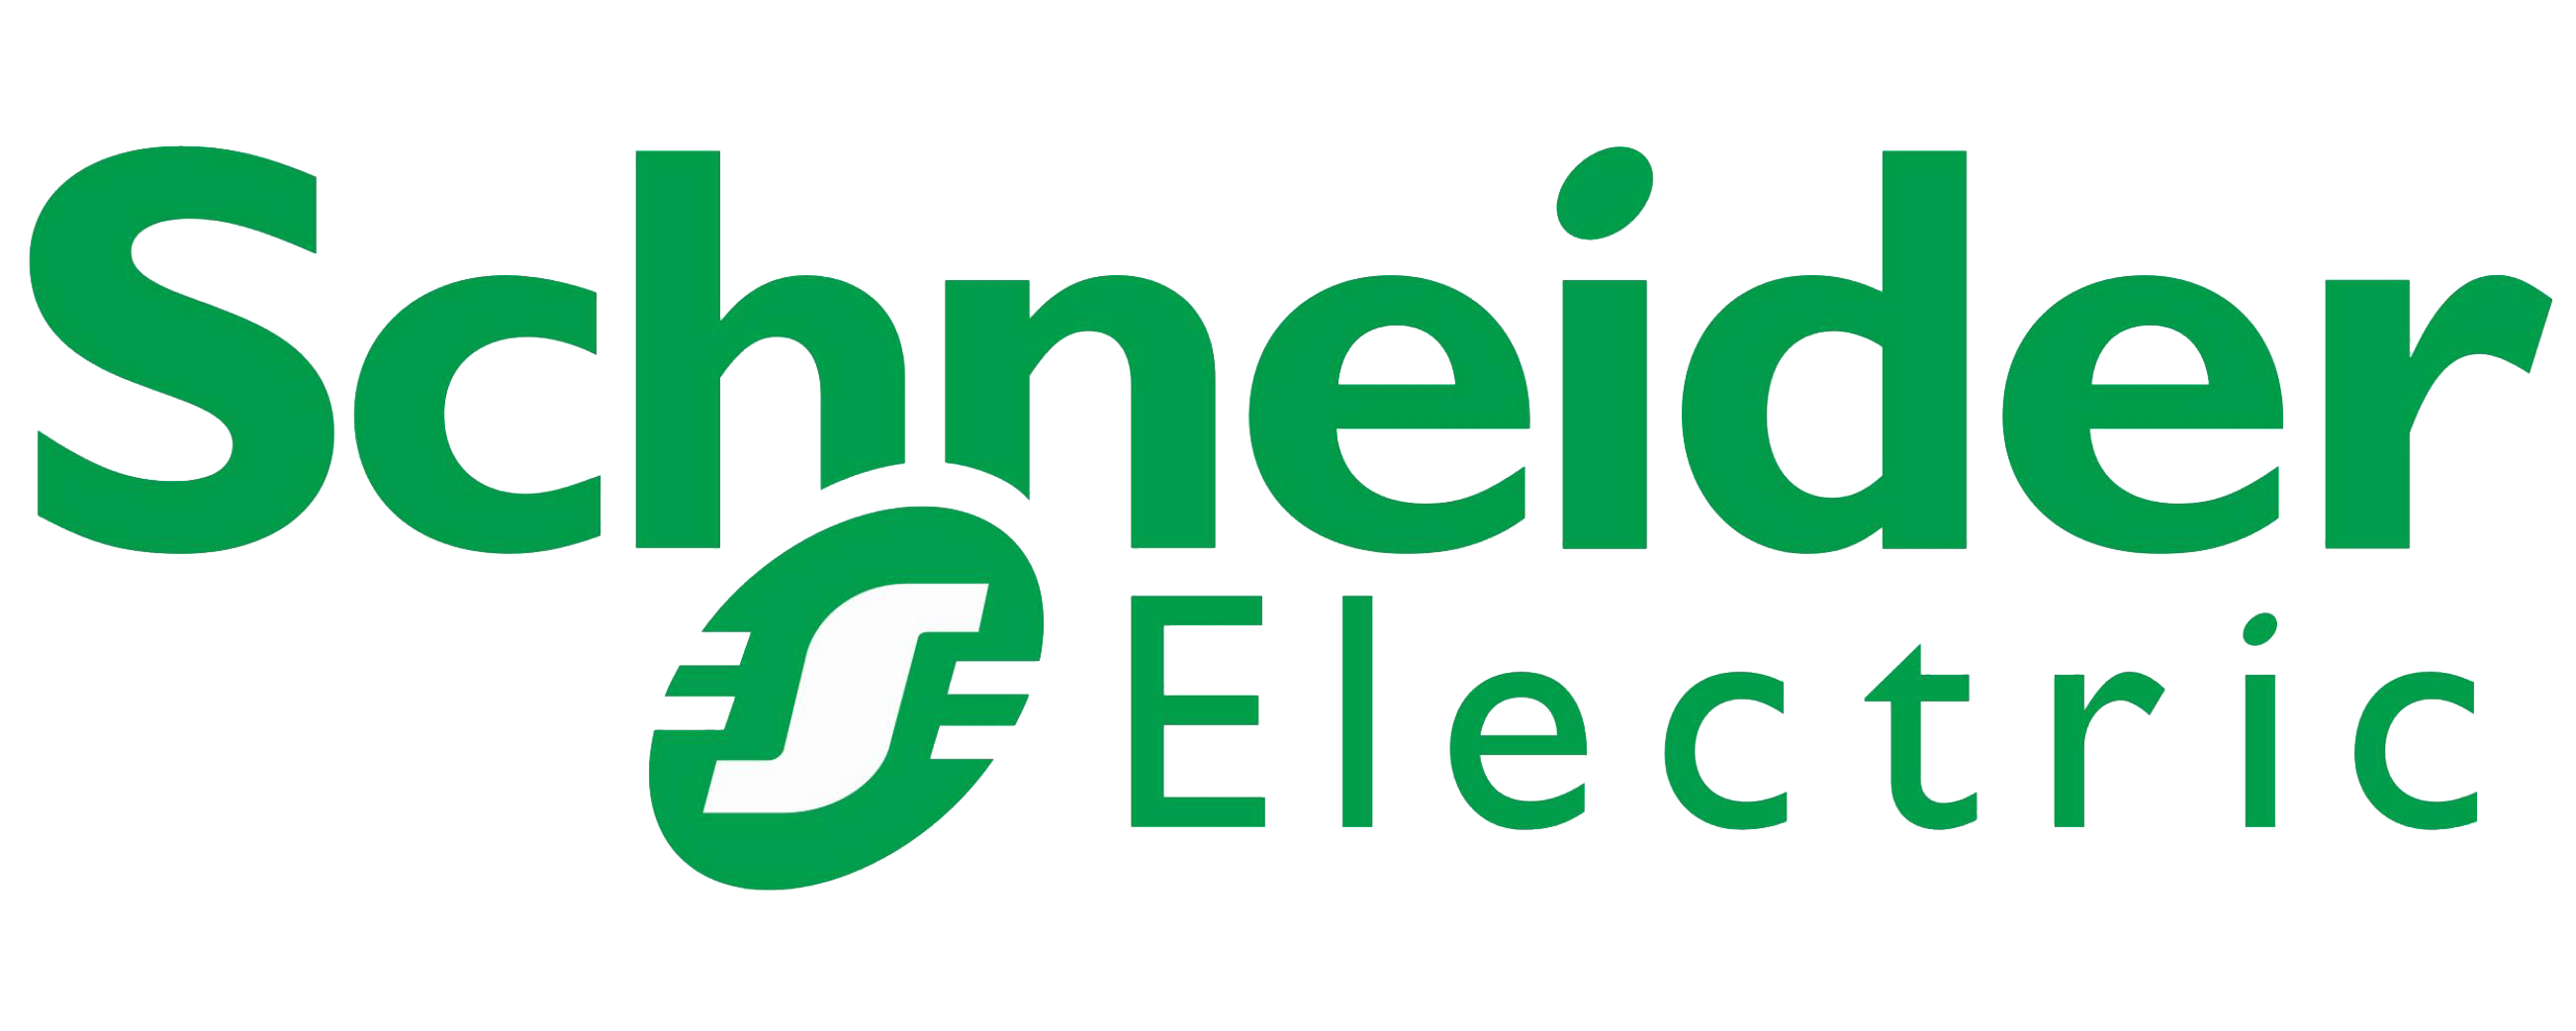 schneider_electric-logo-transparent